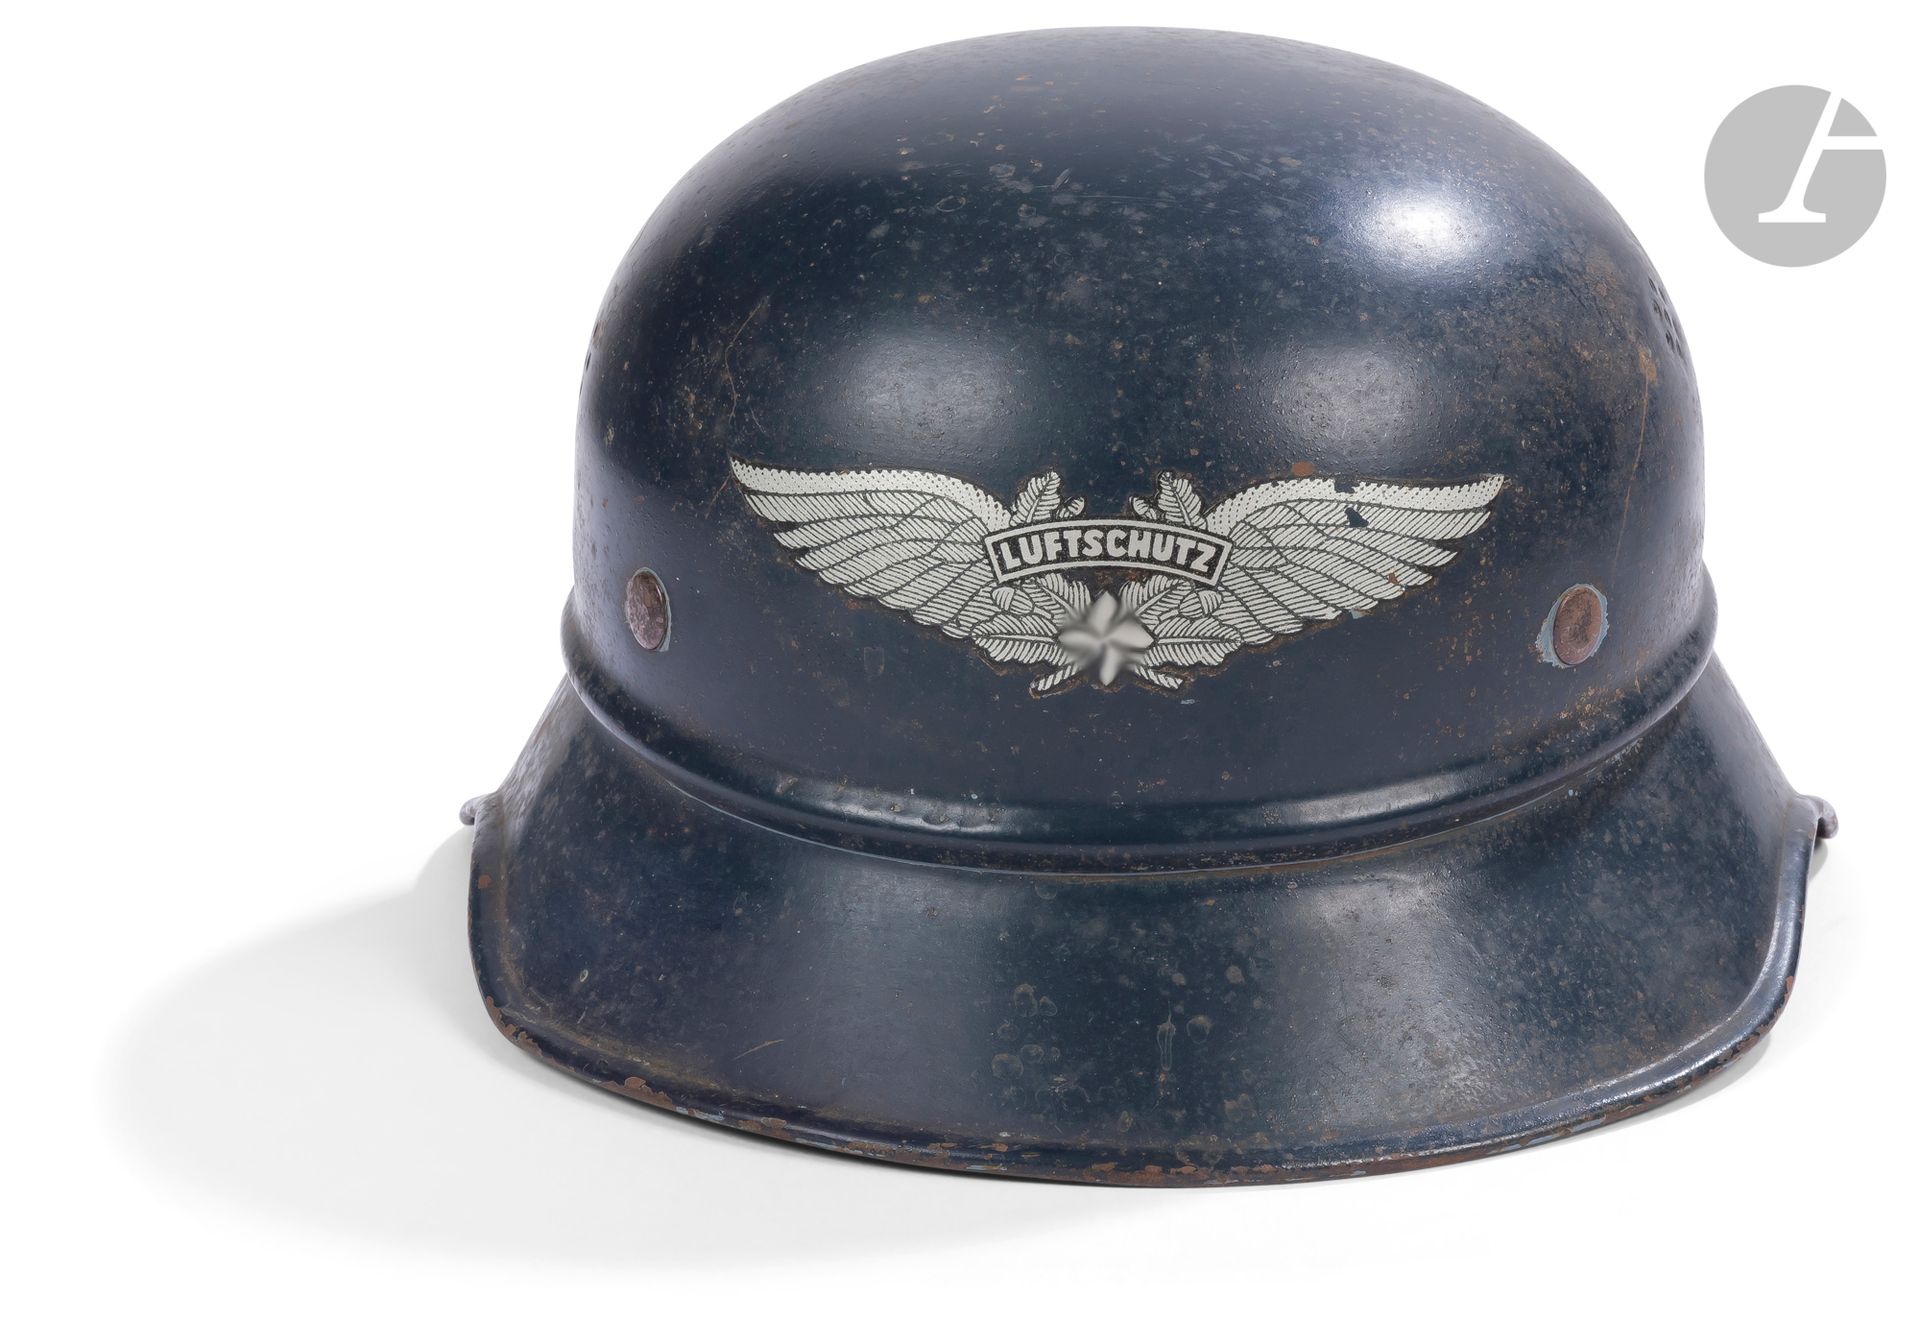 Null Luftschutz头盔38型。
头饰翻起。有标签 "Vertrieb genehmigt gemass § 8 Luftschutzgesetz K&hellip;